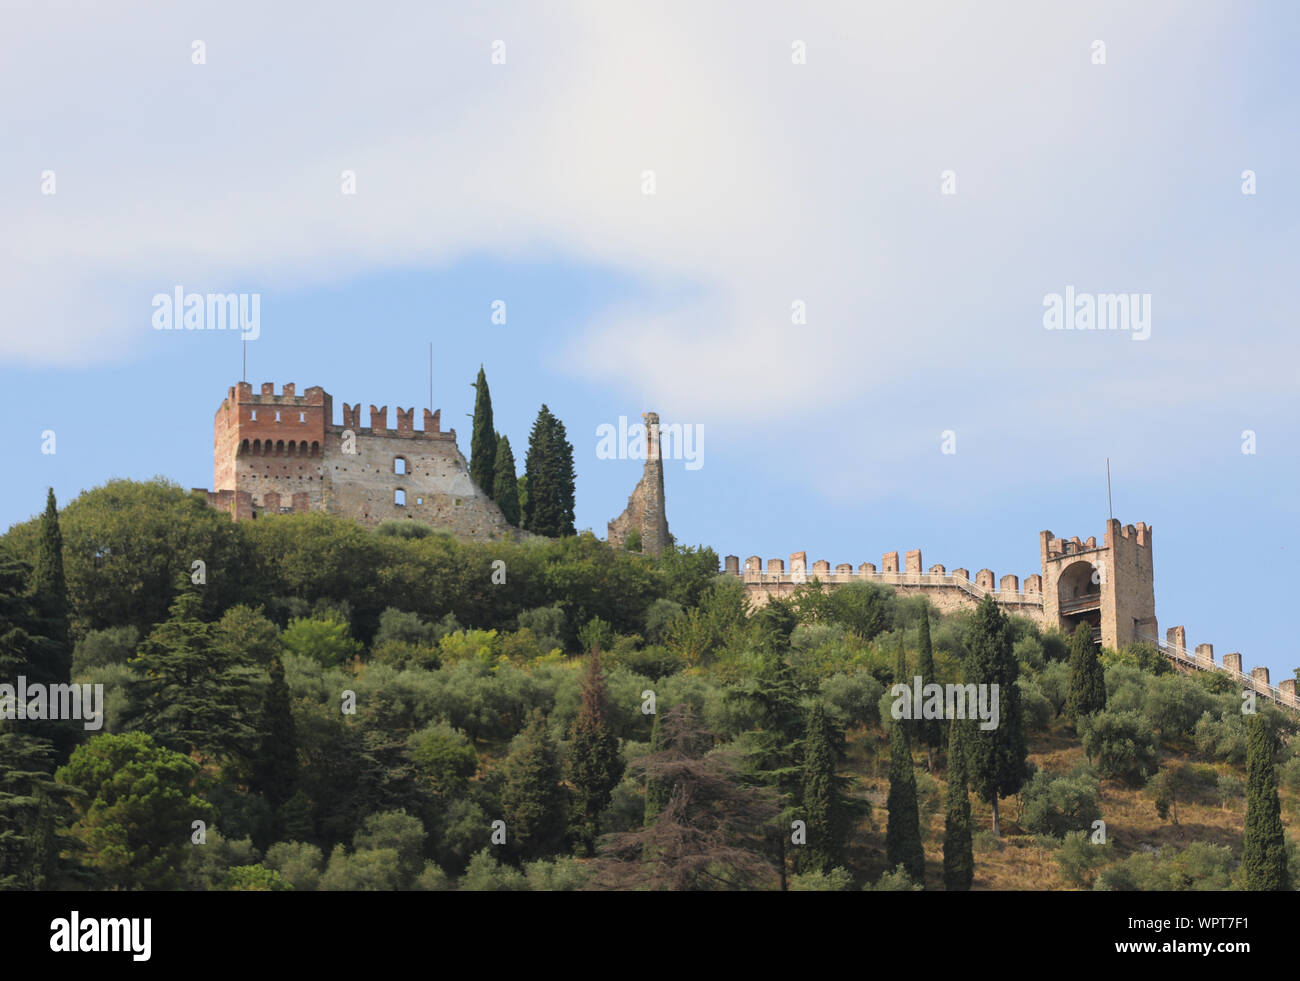 Schiavon, VI, Italie - 3 septembre 2019 : château appelé Castello Superiore en langue italienne Banque D'Images